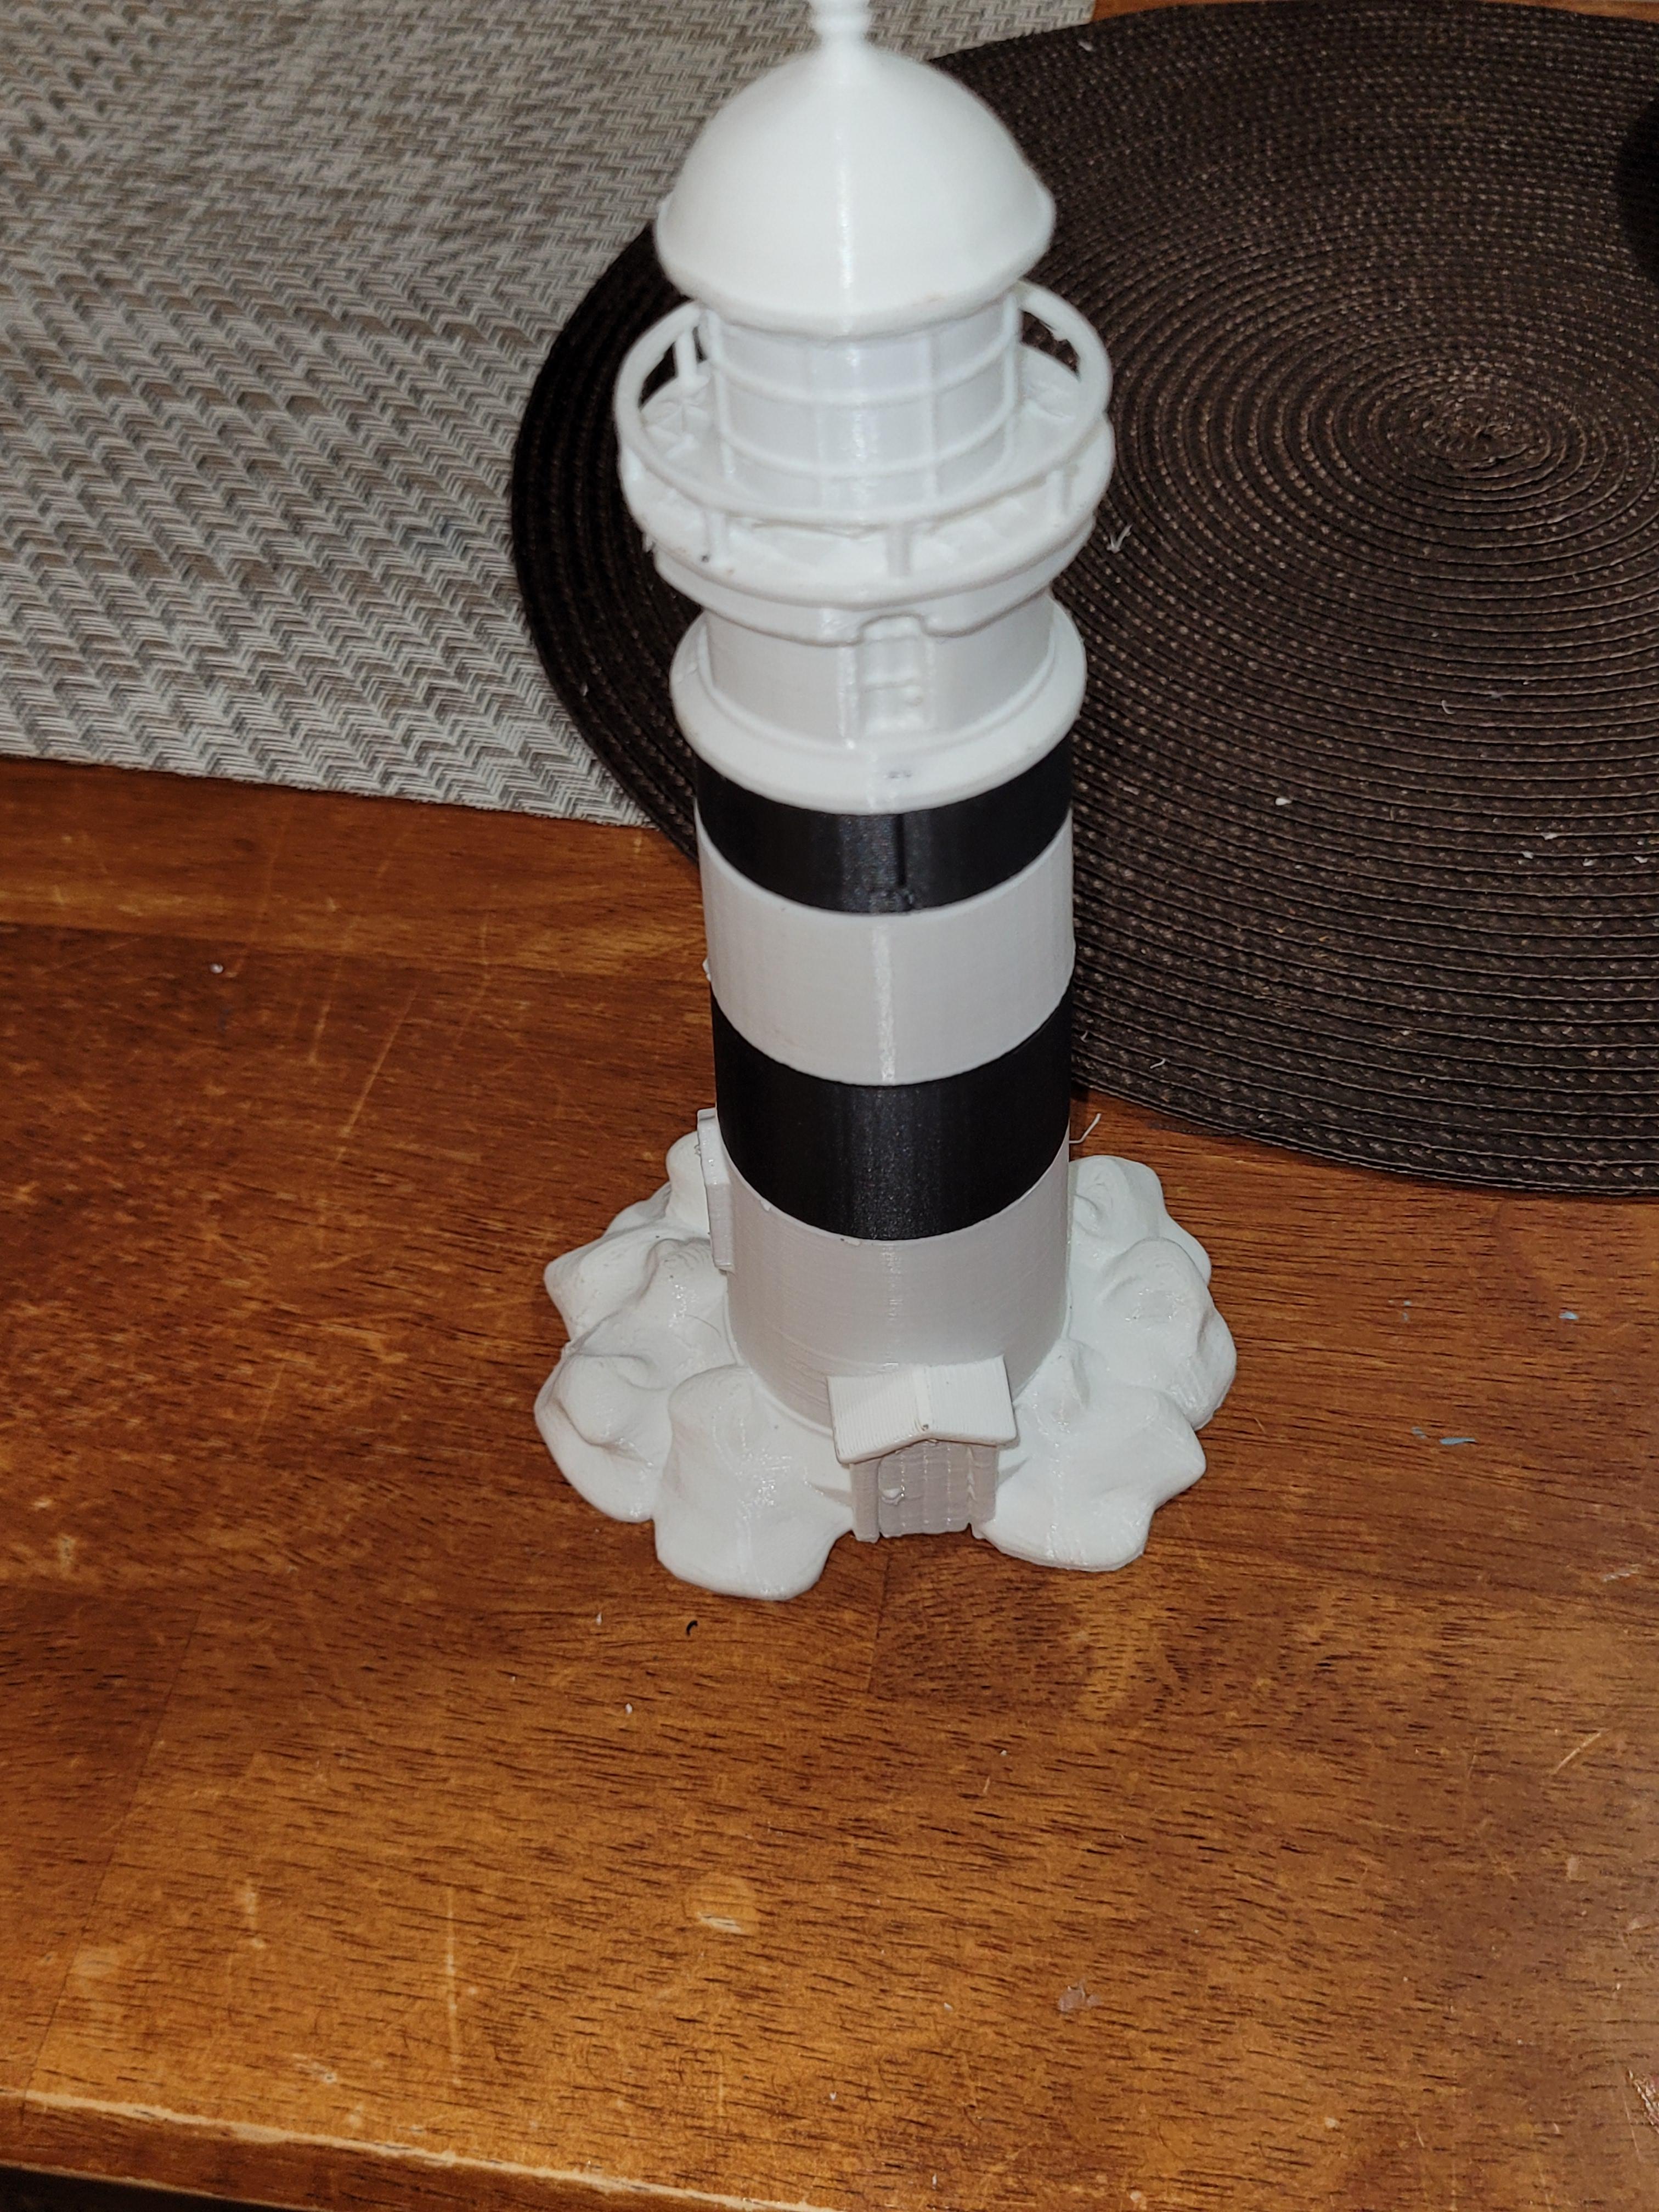 Lighthouse 3d model